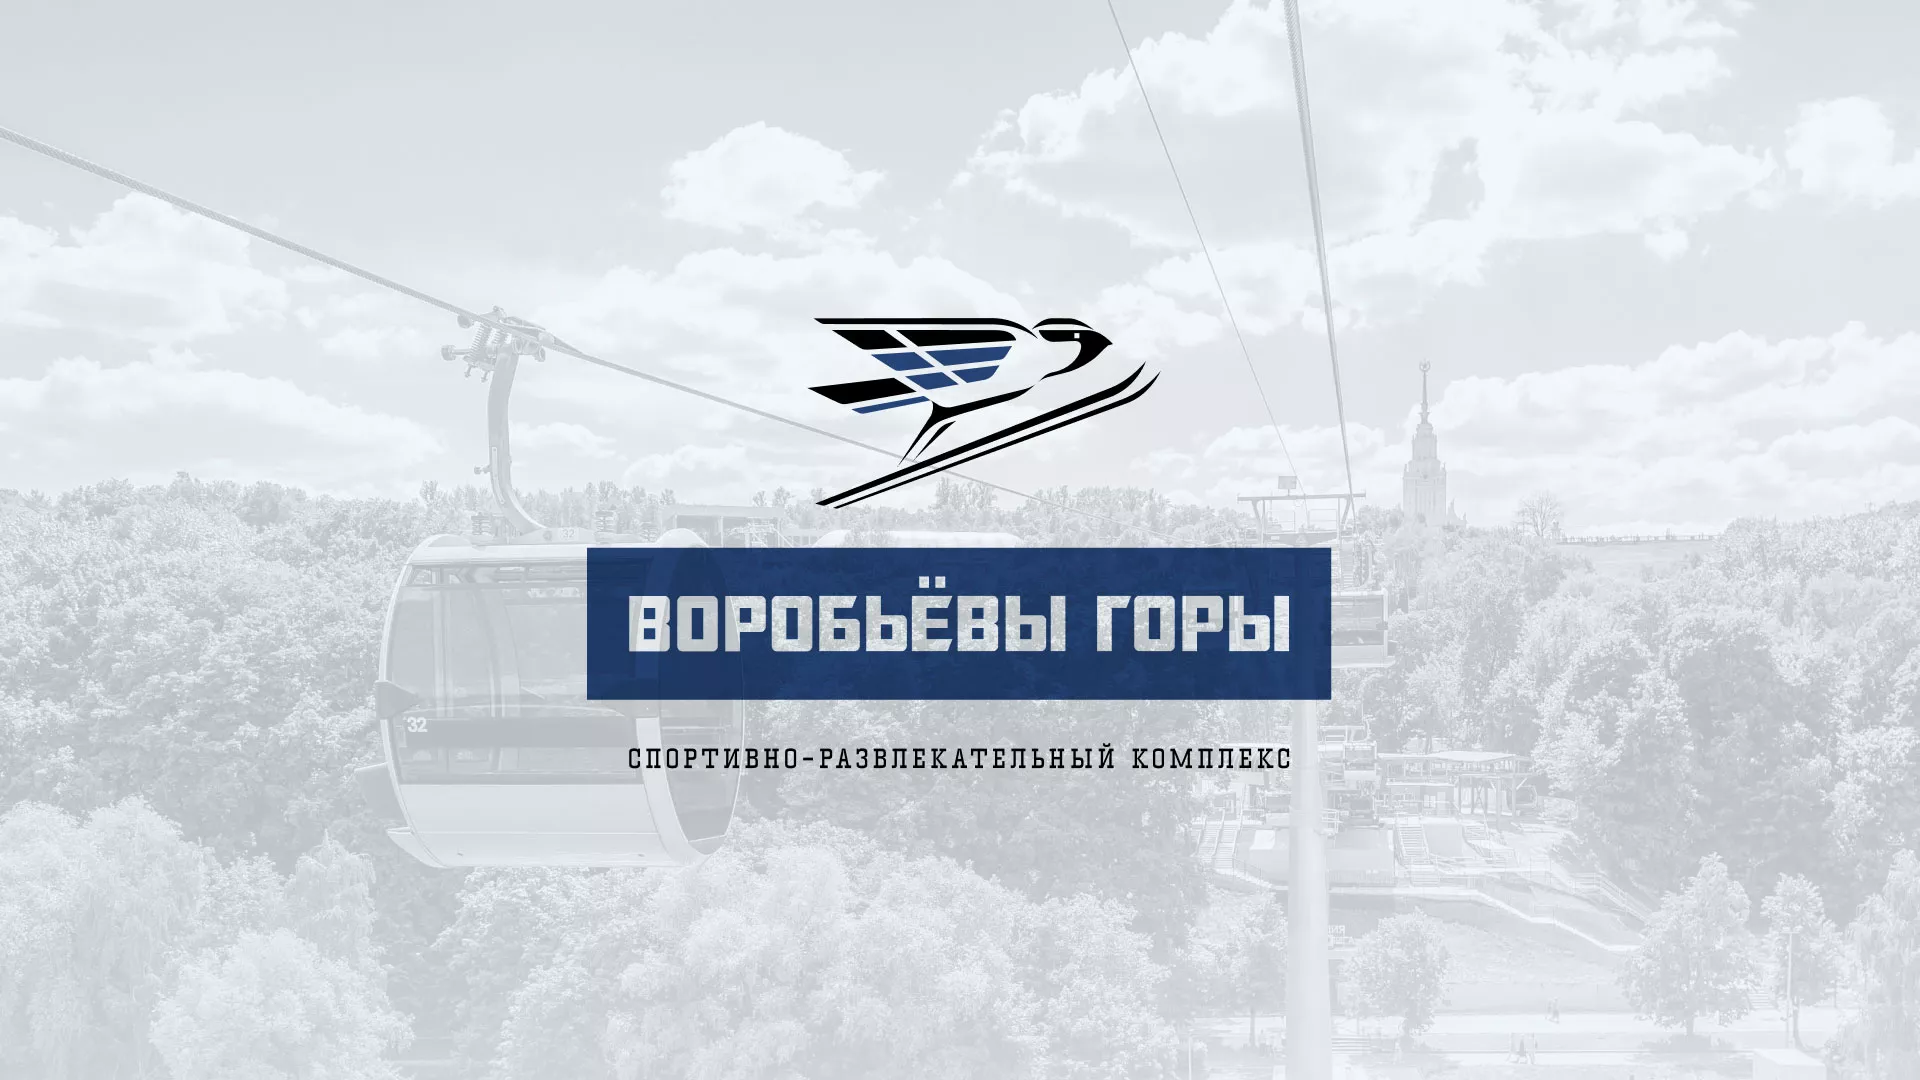 Разработка сайта в Зубцове для спортивно-развлекательного комплекса «Воробьёвы горы»